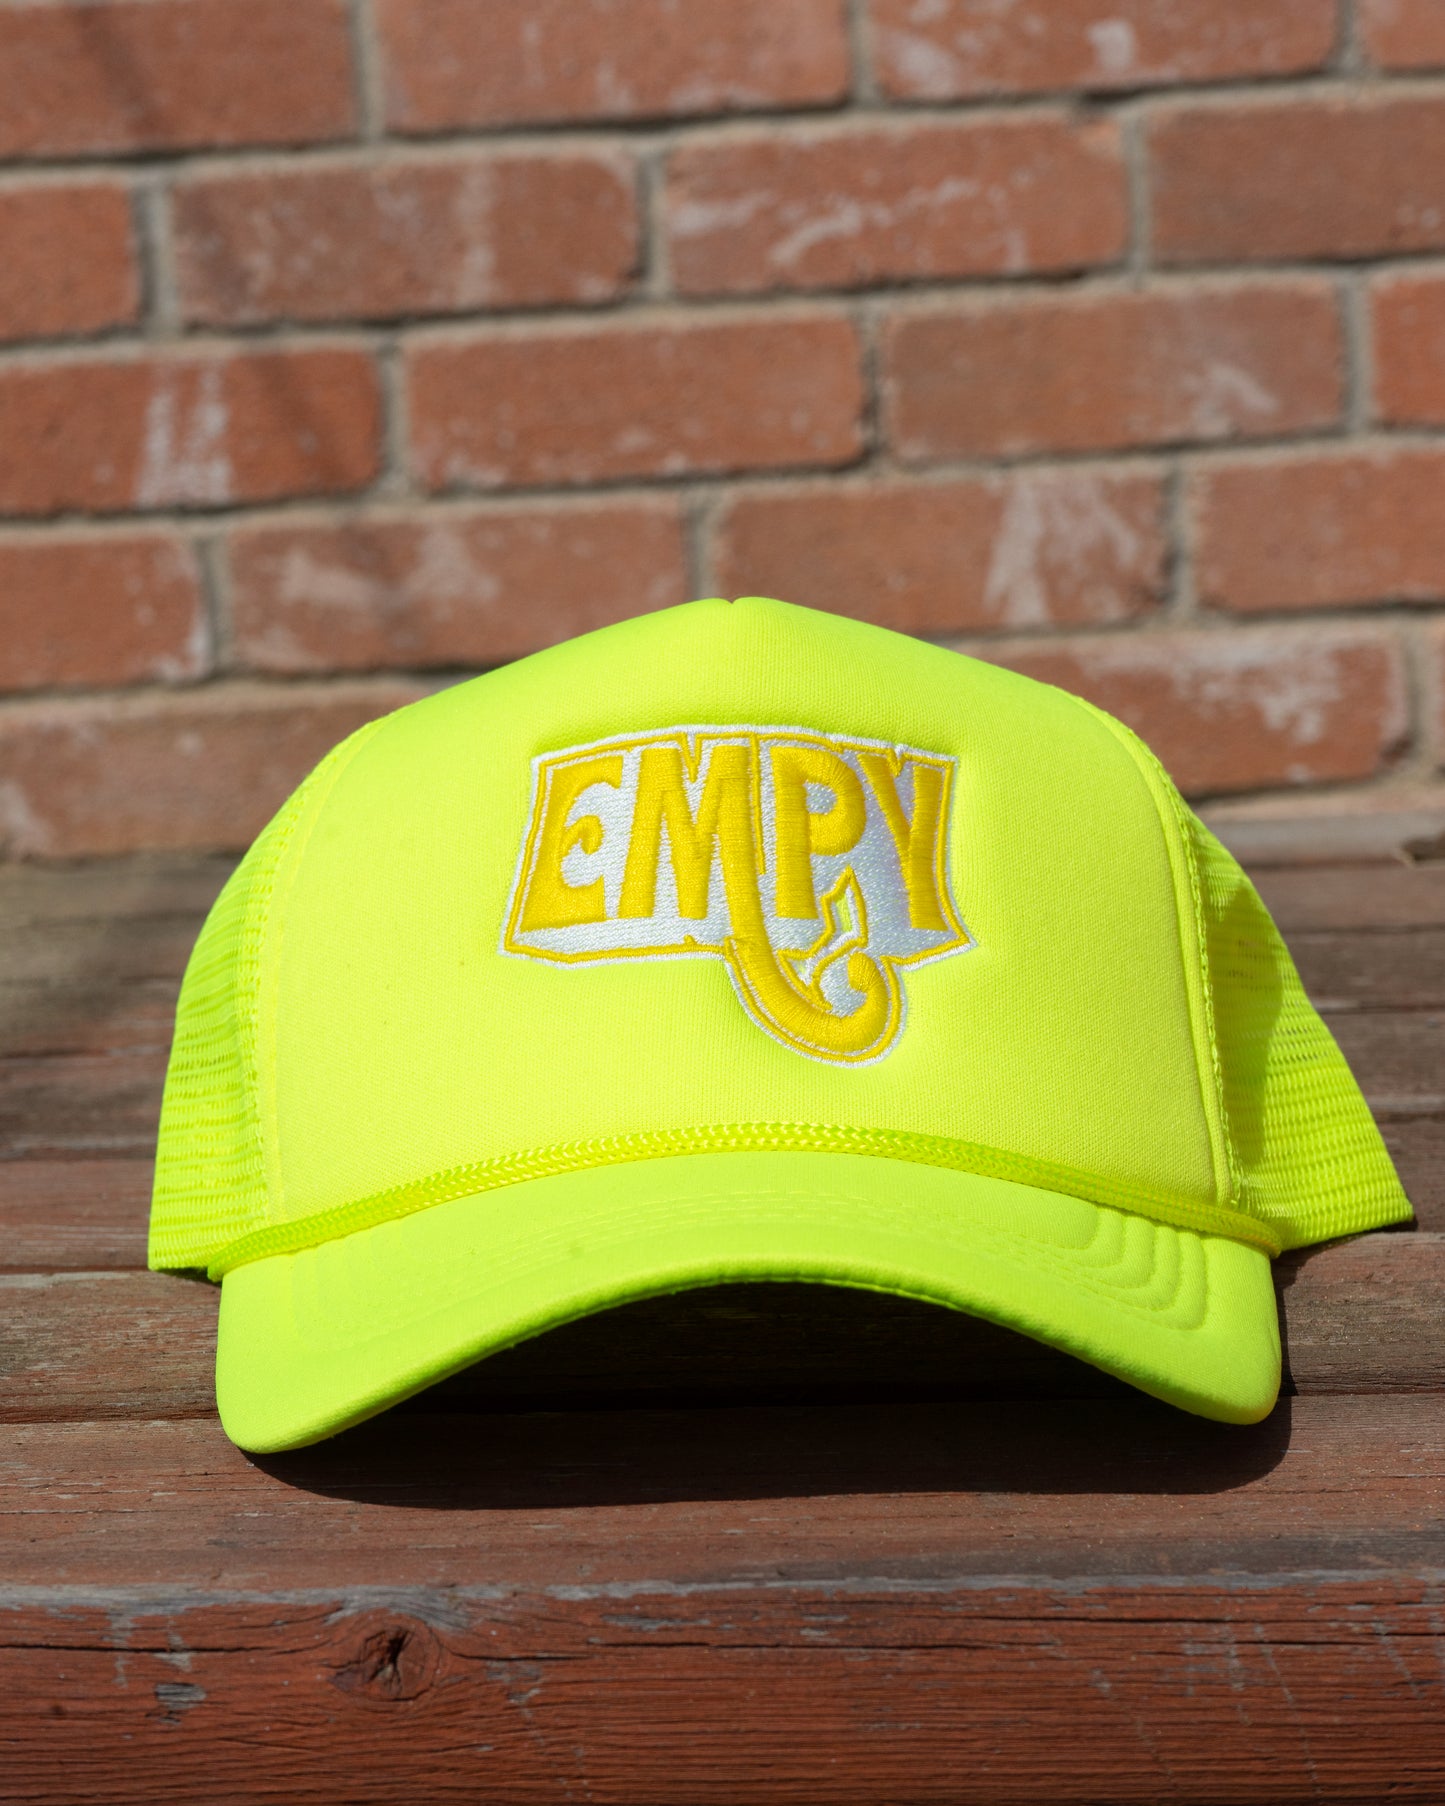 Neon Green Empy Trucker Hat